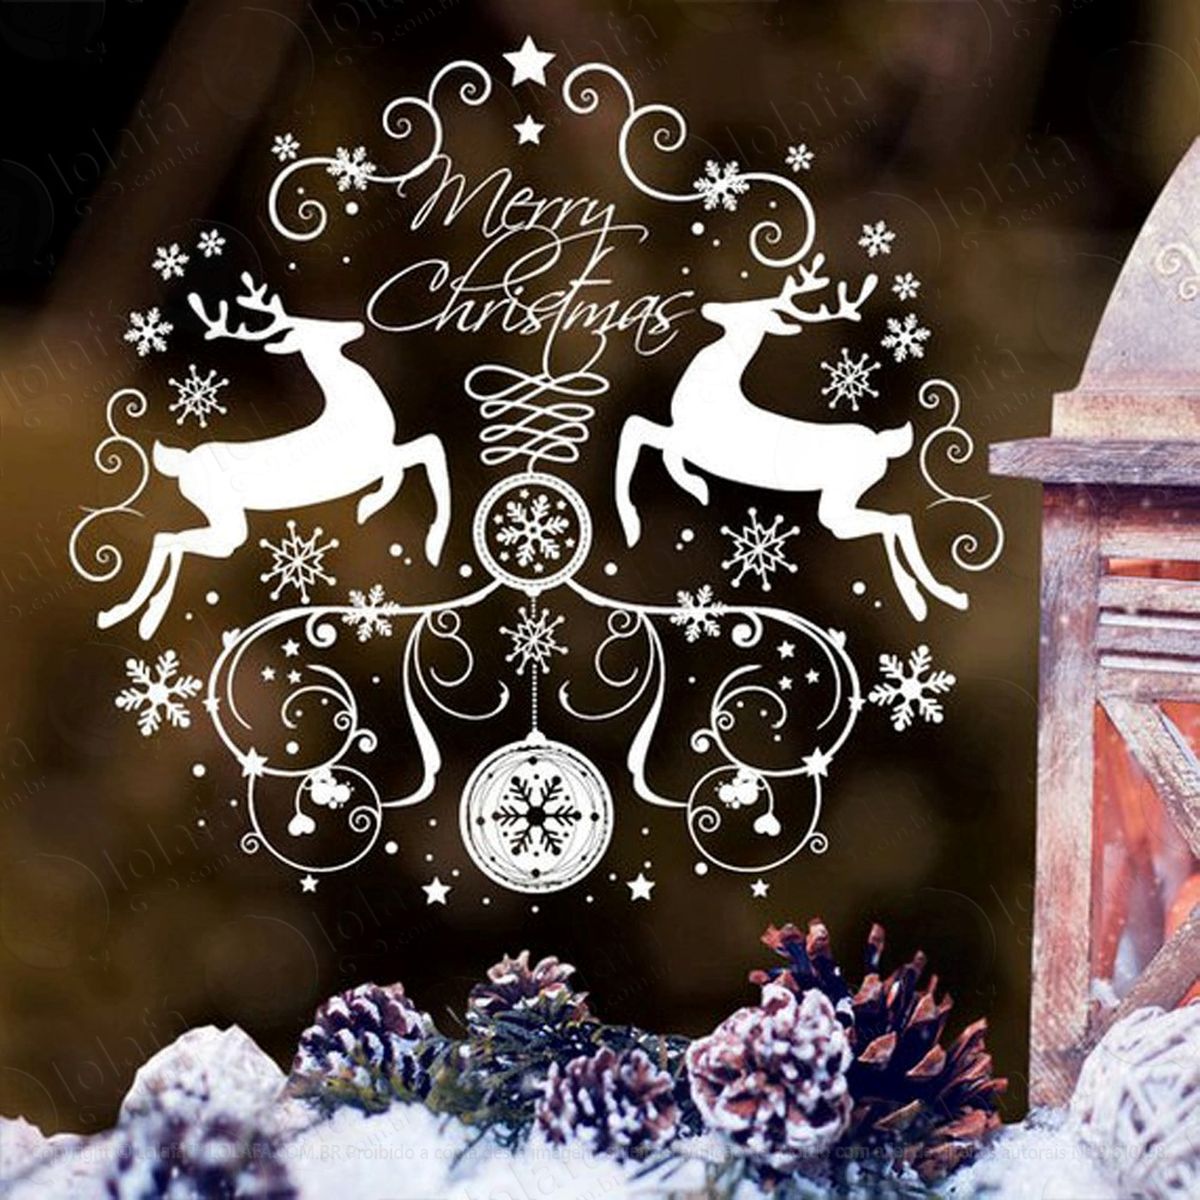 guirlanda e renas adesivo de natal para vitrine, parede, porta de vidro - decoração natalina mod:116